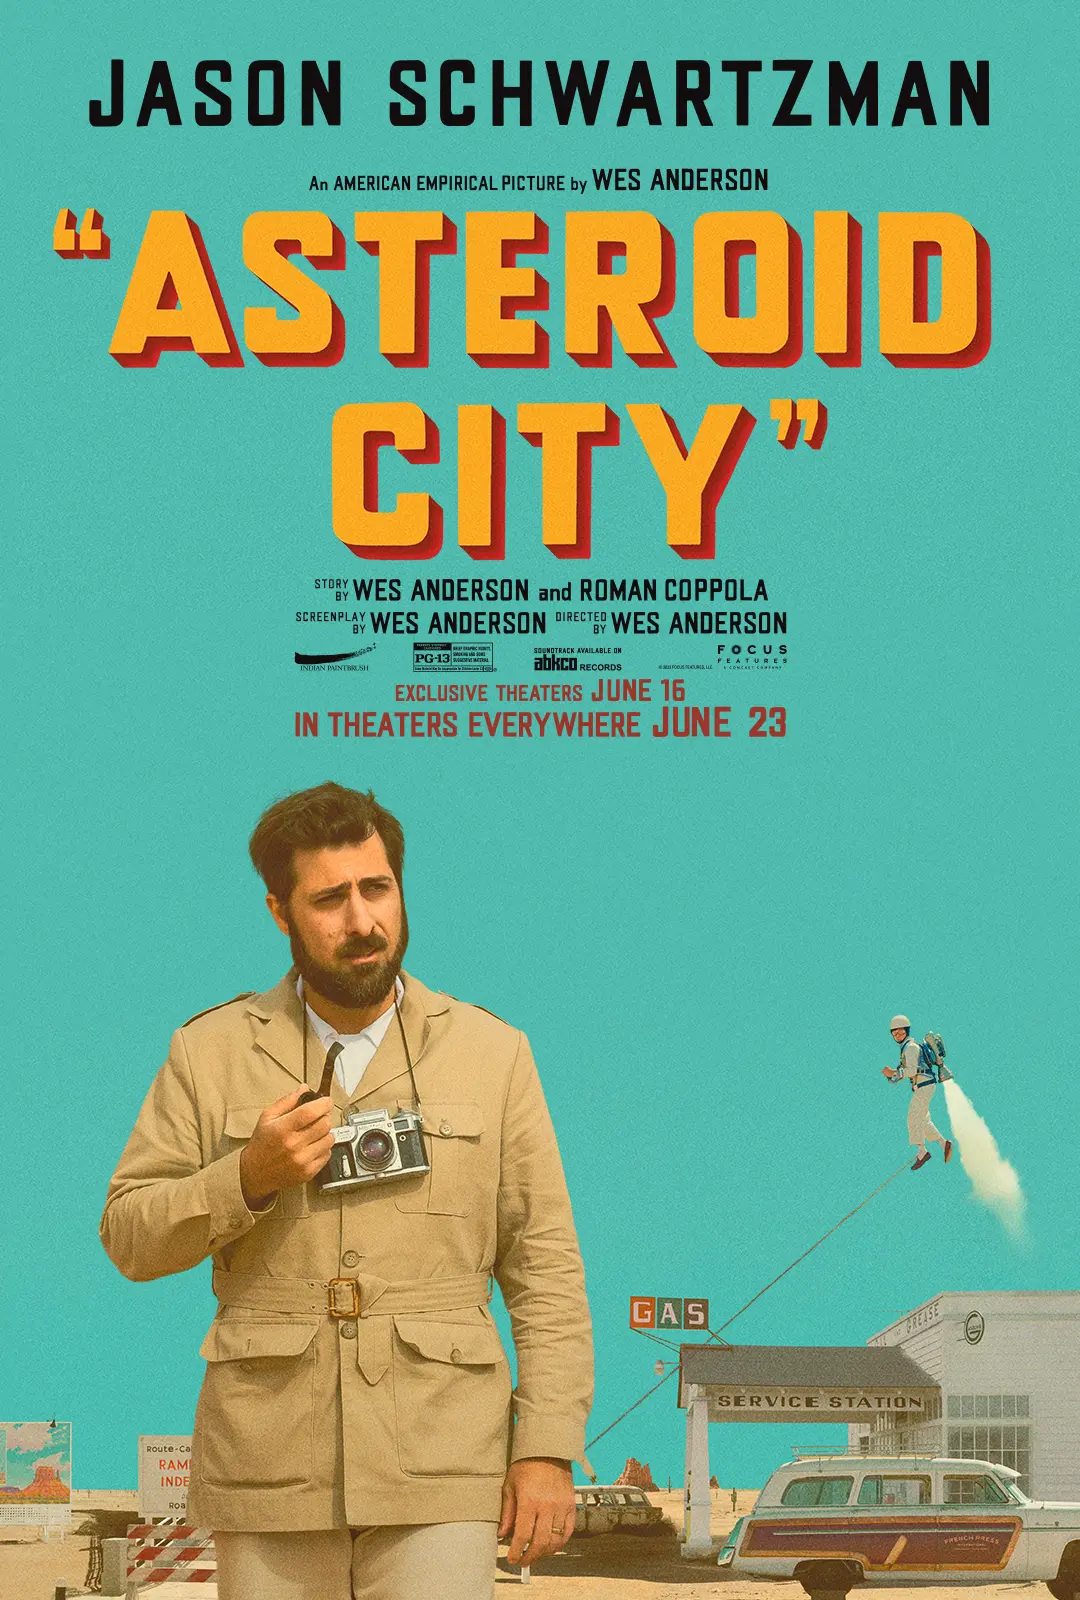 Jason Schwartzman Asteroid City póster